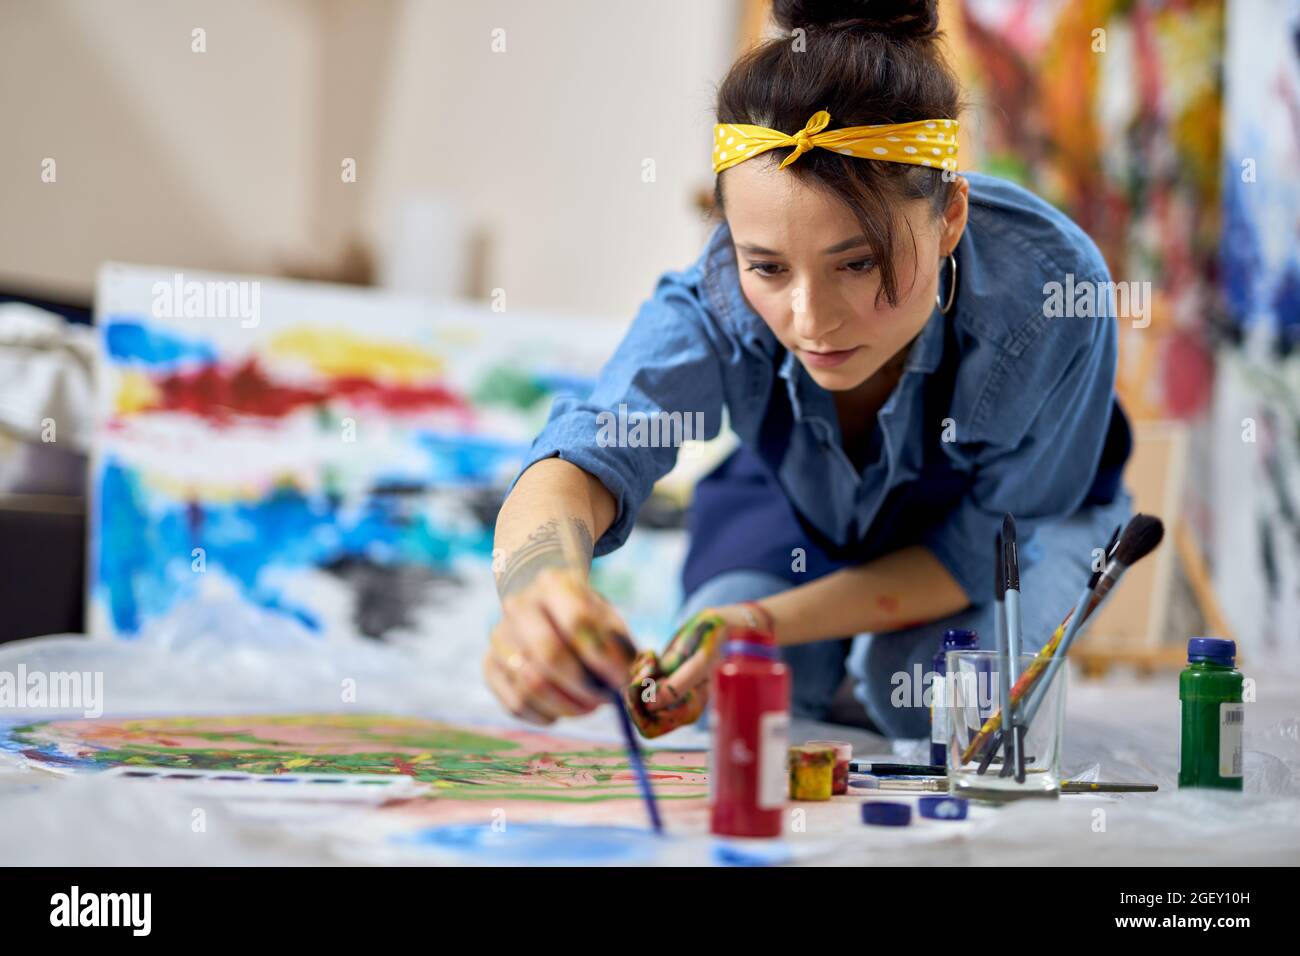 Fokussierte junge Frau, Malerin in Schürze Wahl Farbe, halten Pinsel während der Arbeit an der Malerei, sitzen auf dem Boden zu Hause Werkstatt Stockfoto